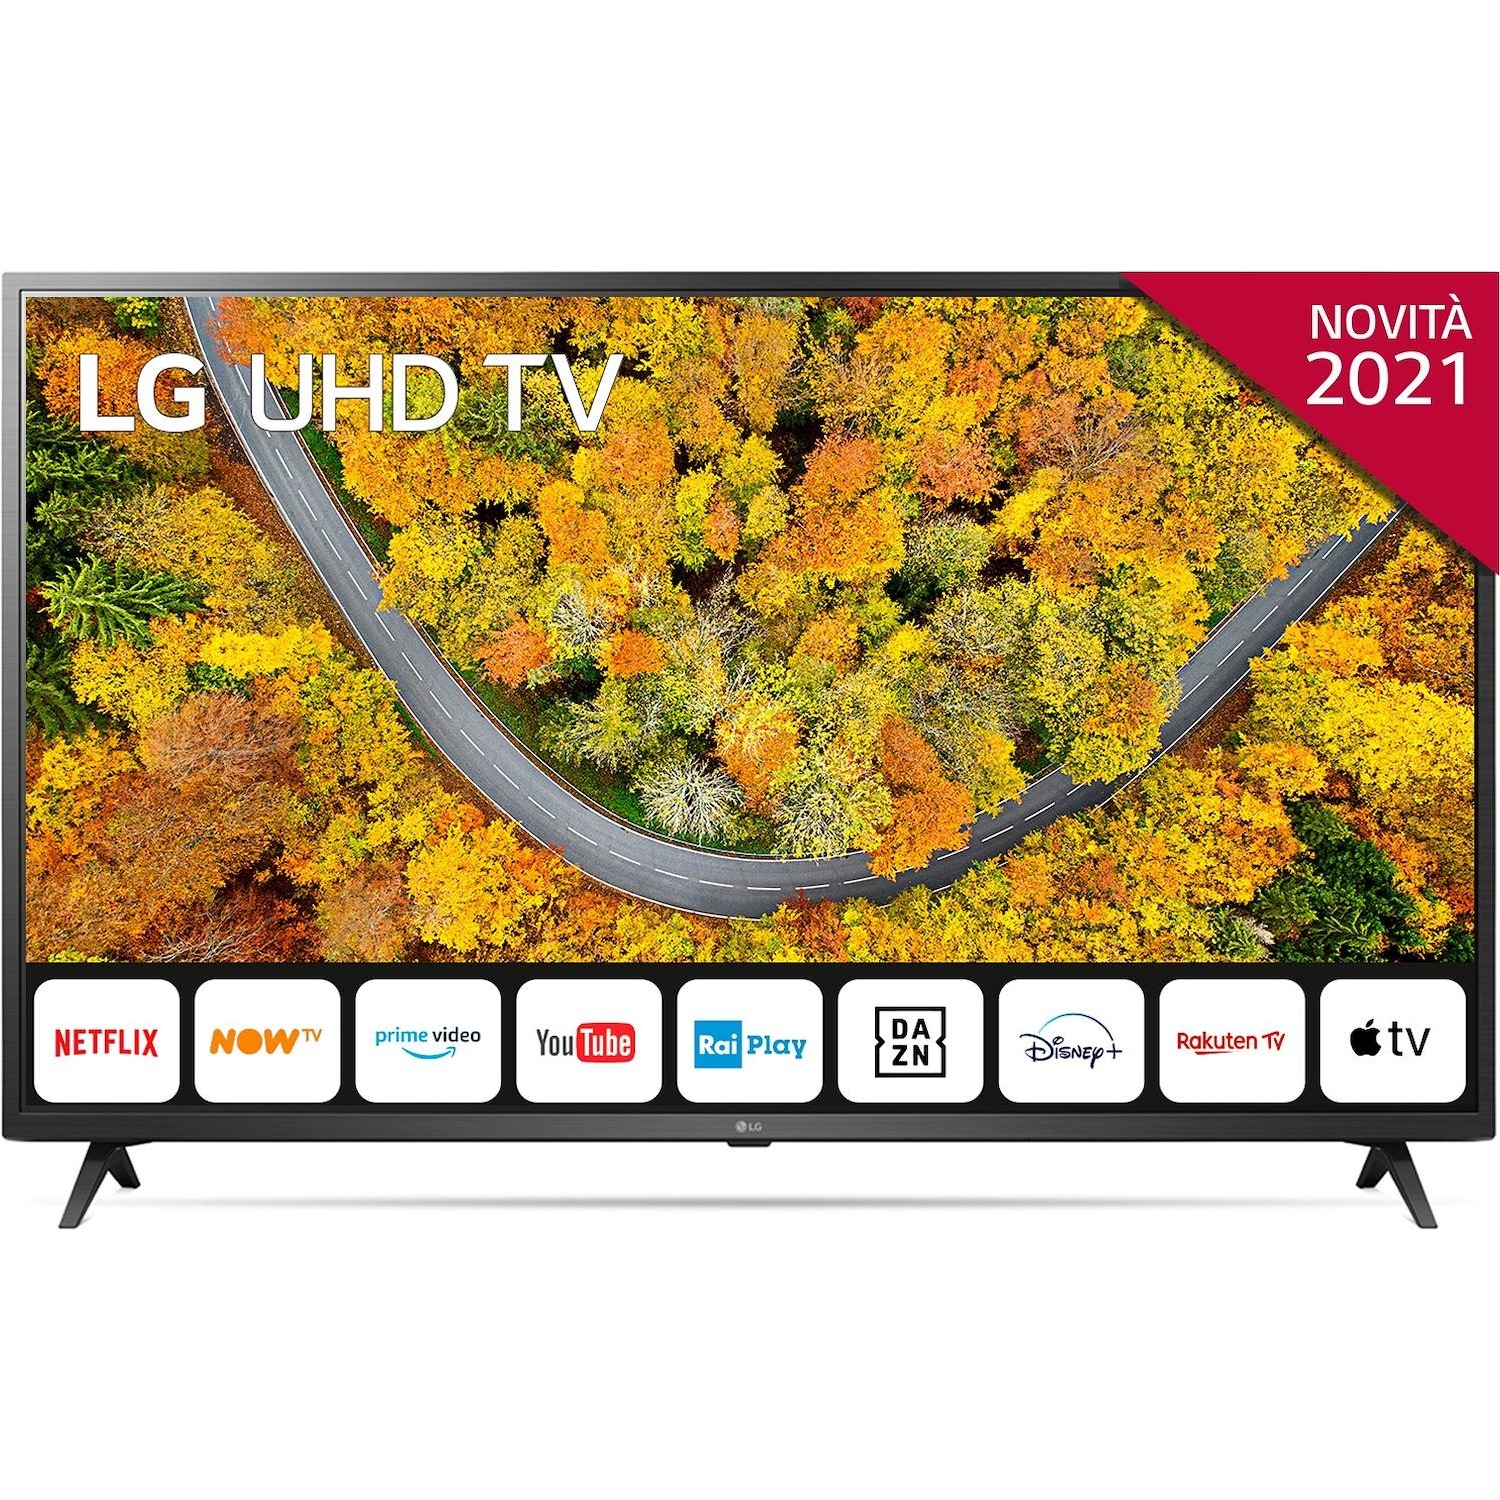 Immagine per TV LED LG 65UP75006 Calibrato 4K e FULL HD da DIMOStore